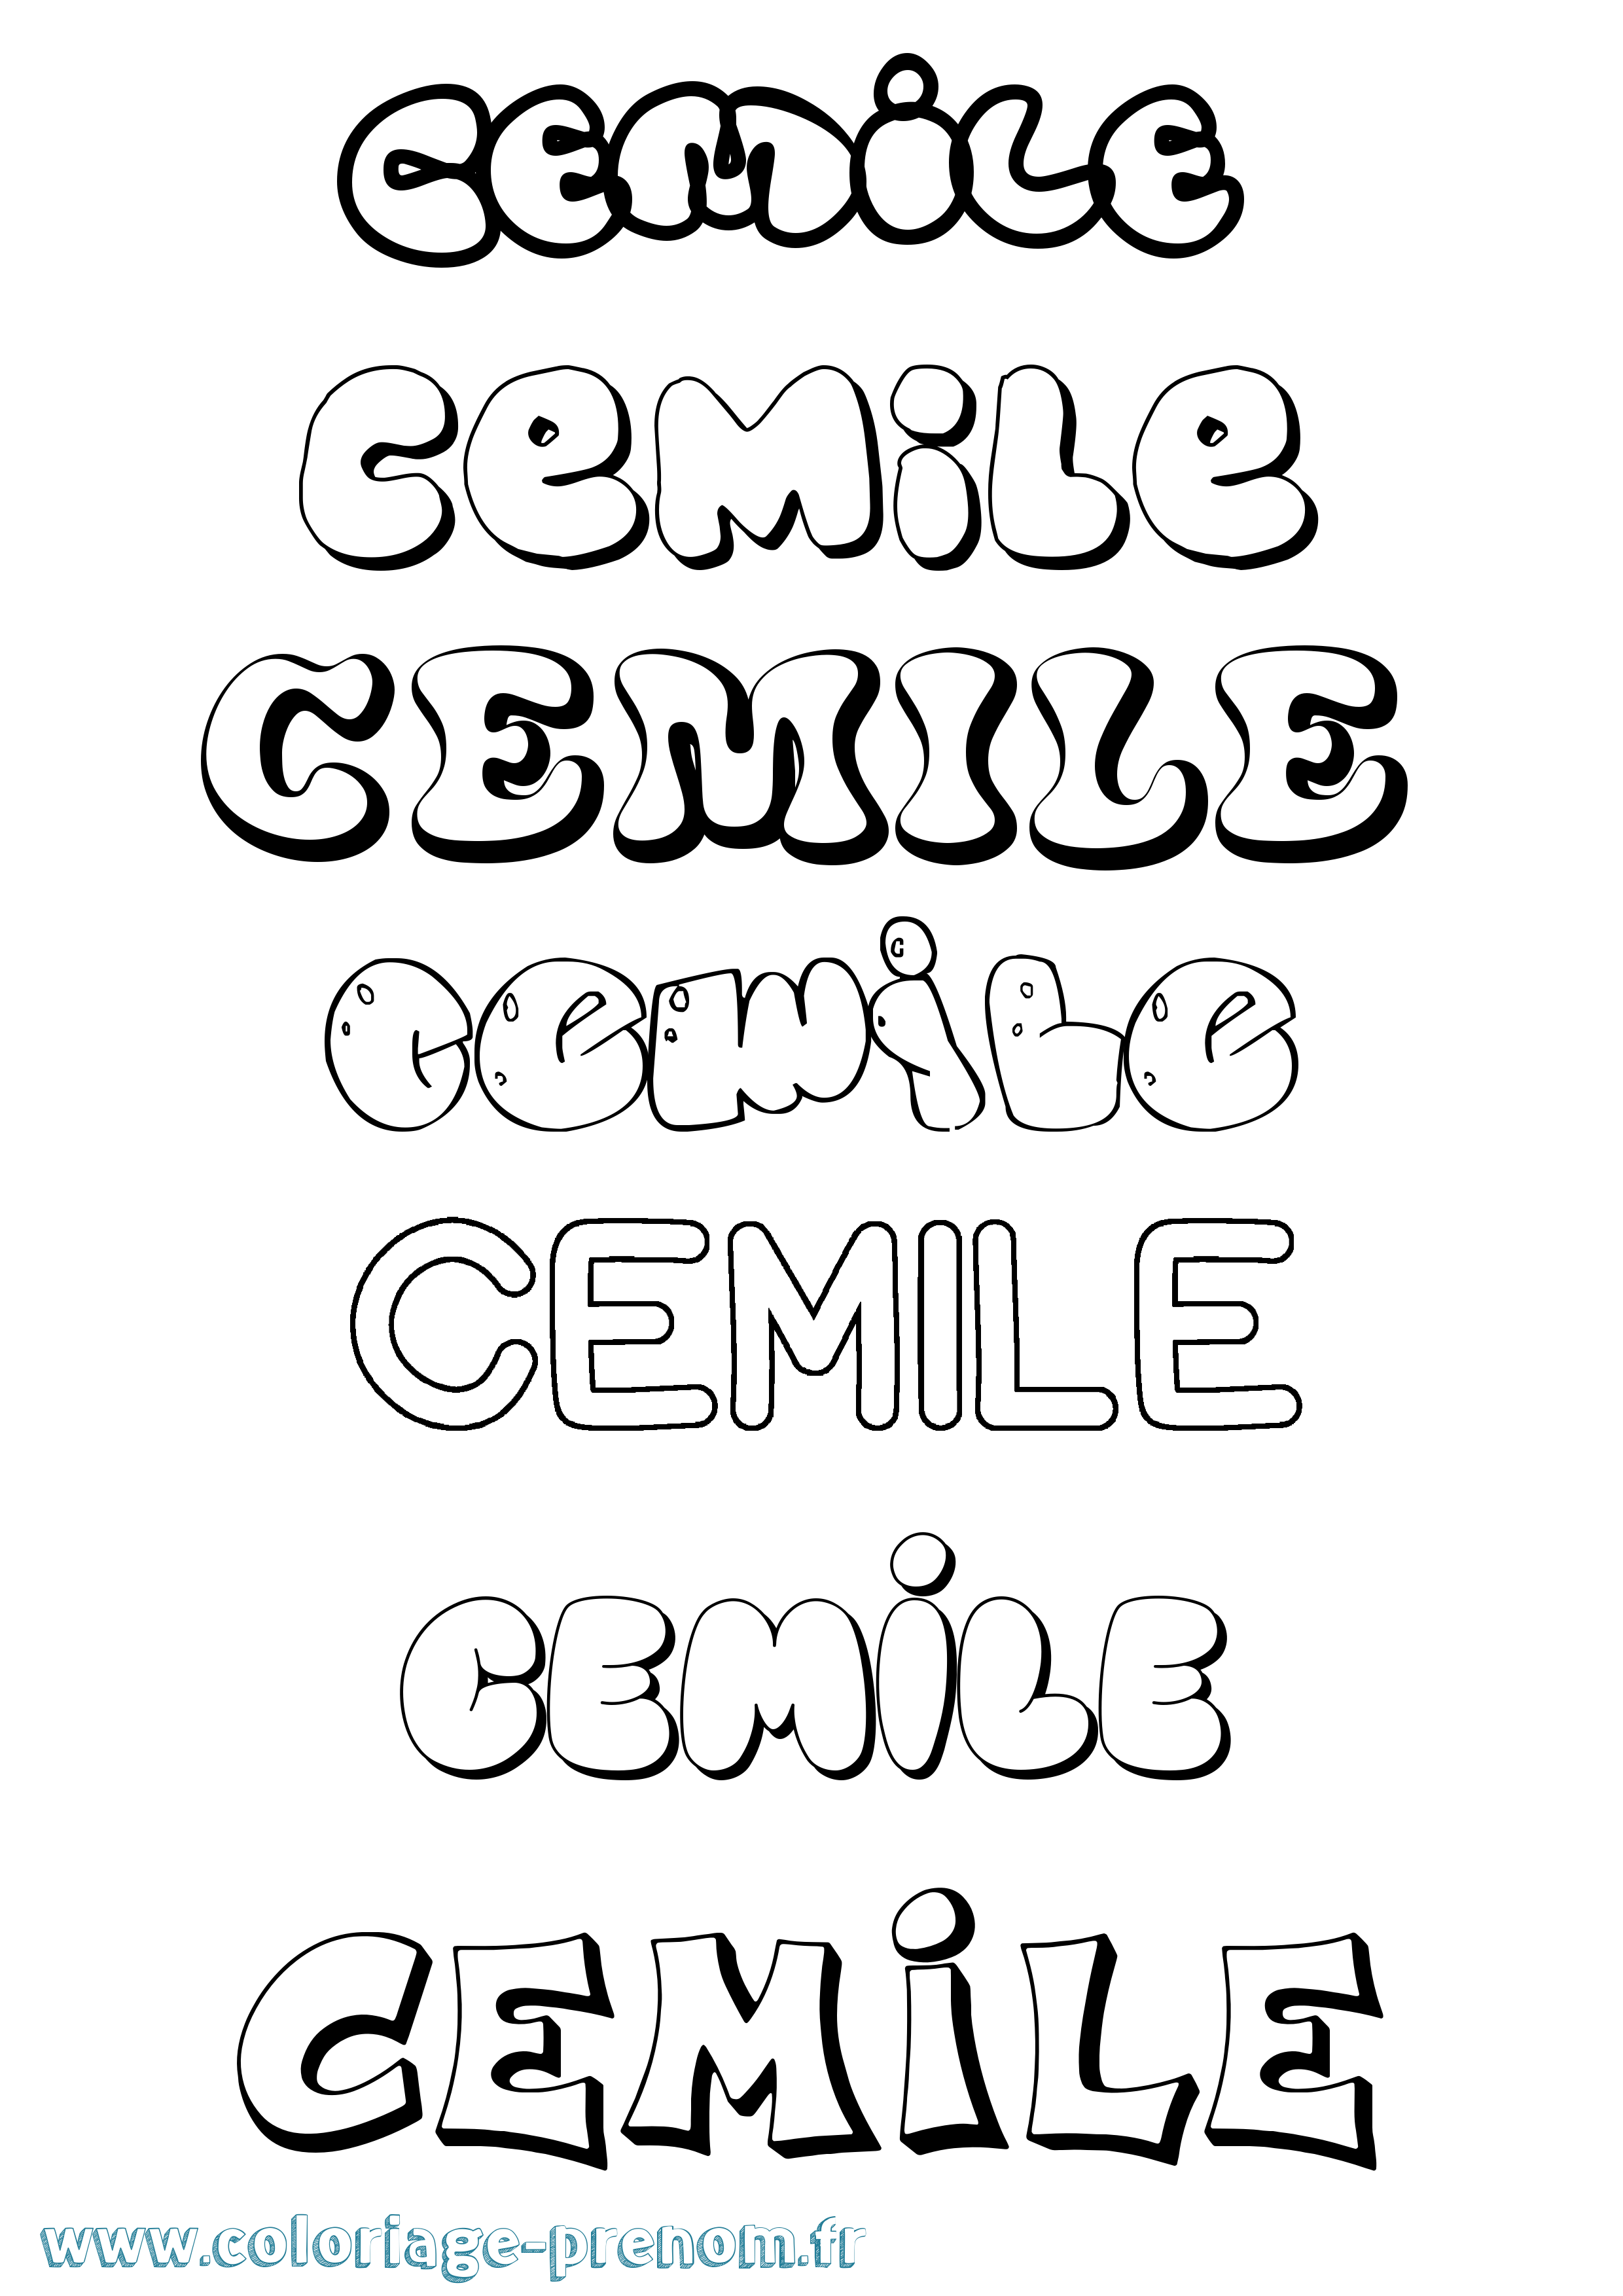 Coloriage prénom Cemile Bubble